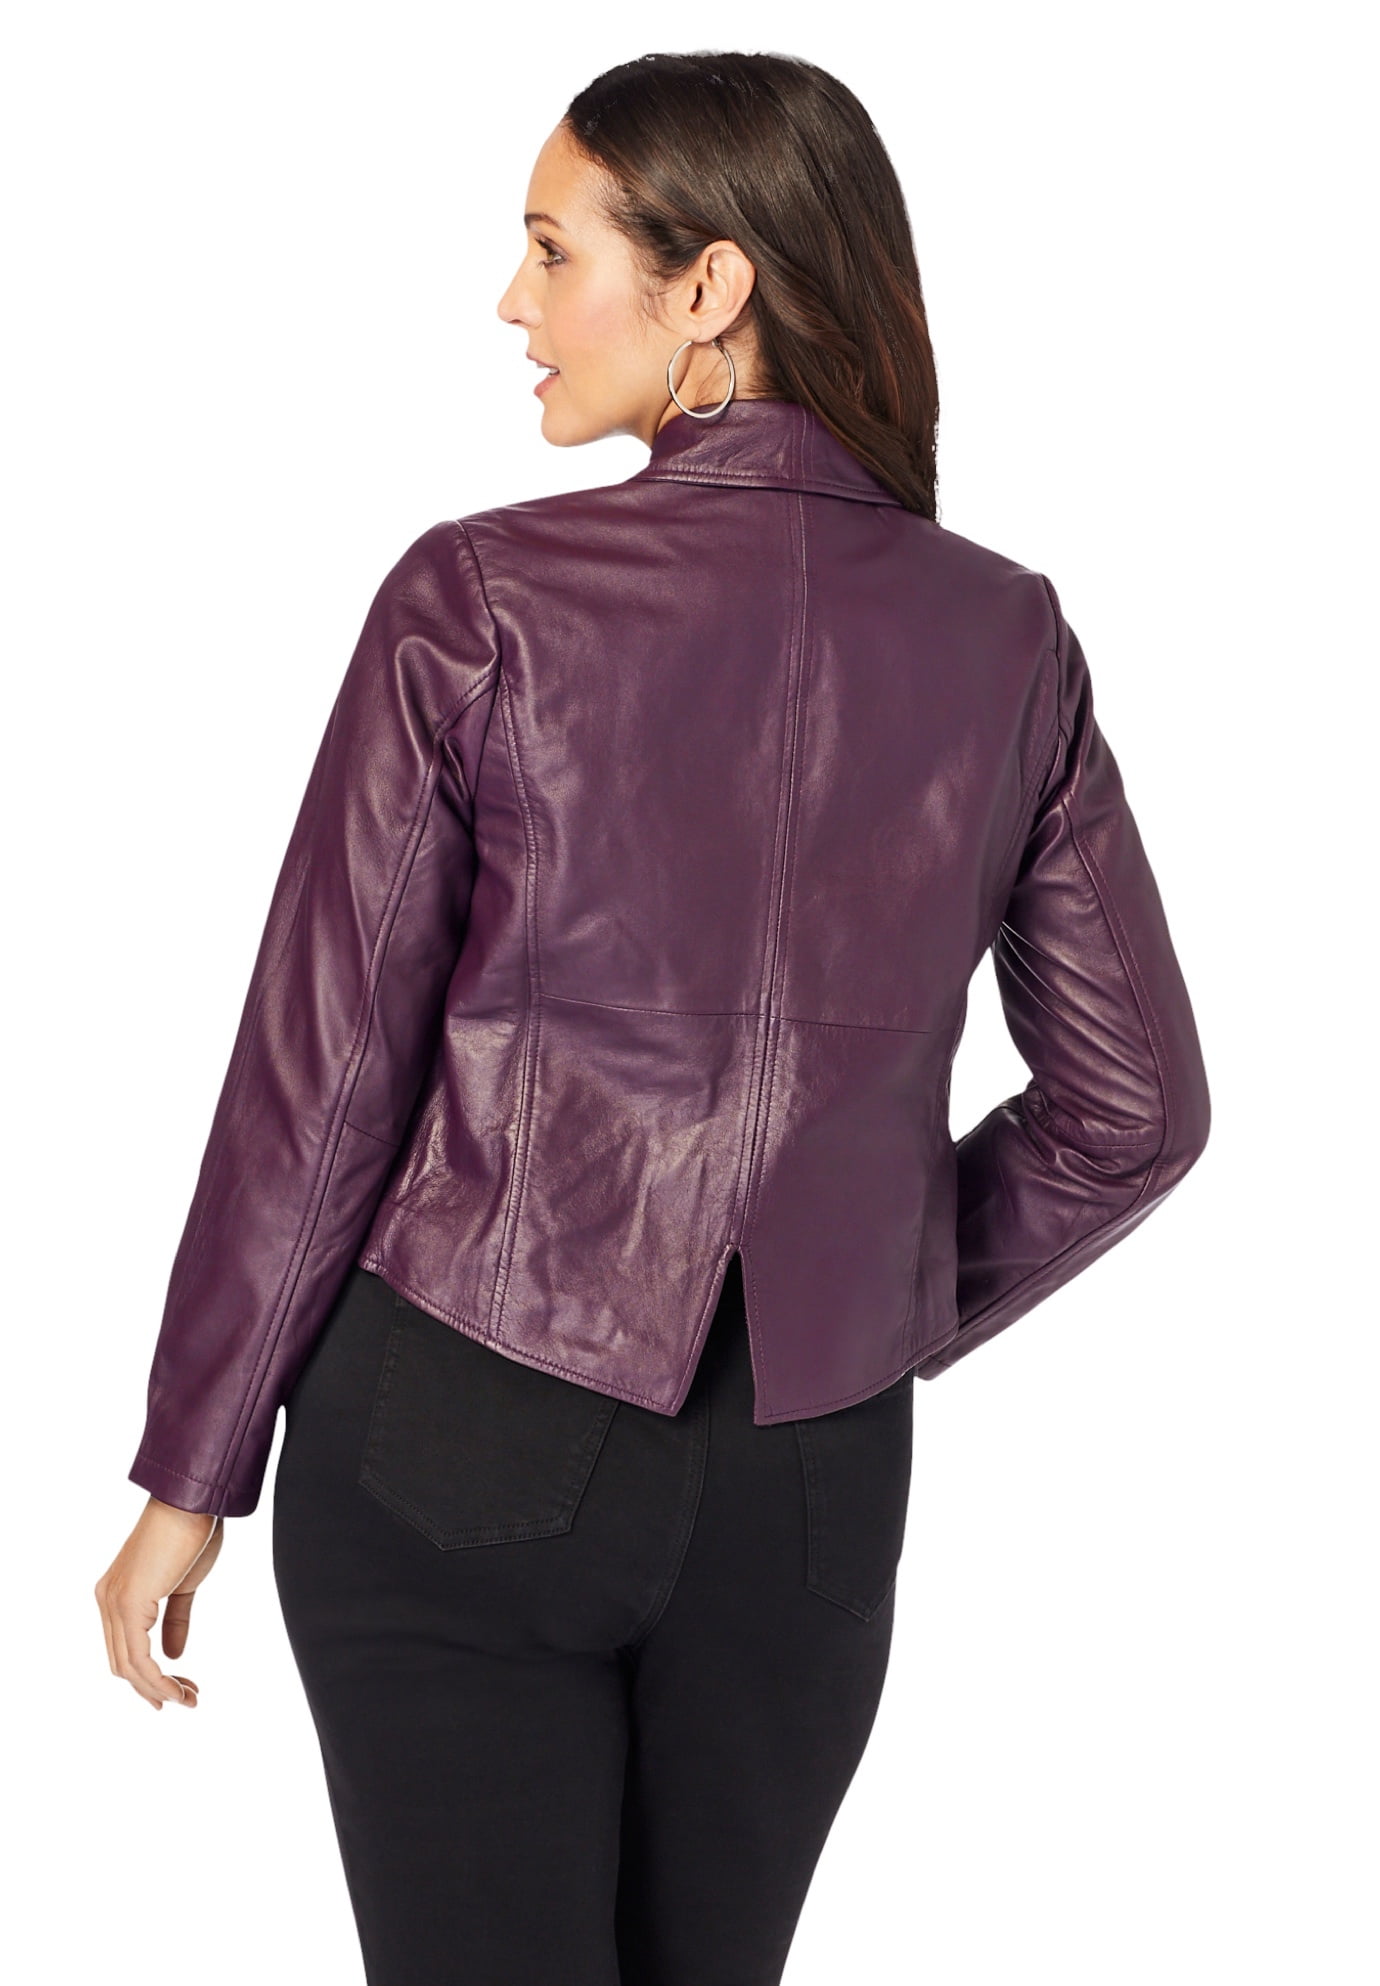 Jessica London Women's Plus Size Shrug Cropped Jacket -